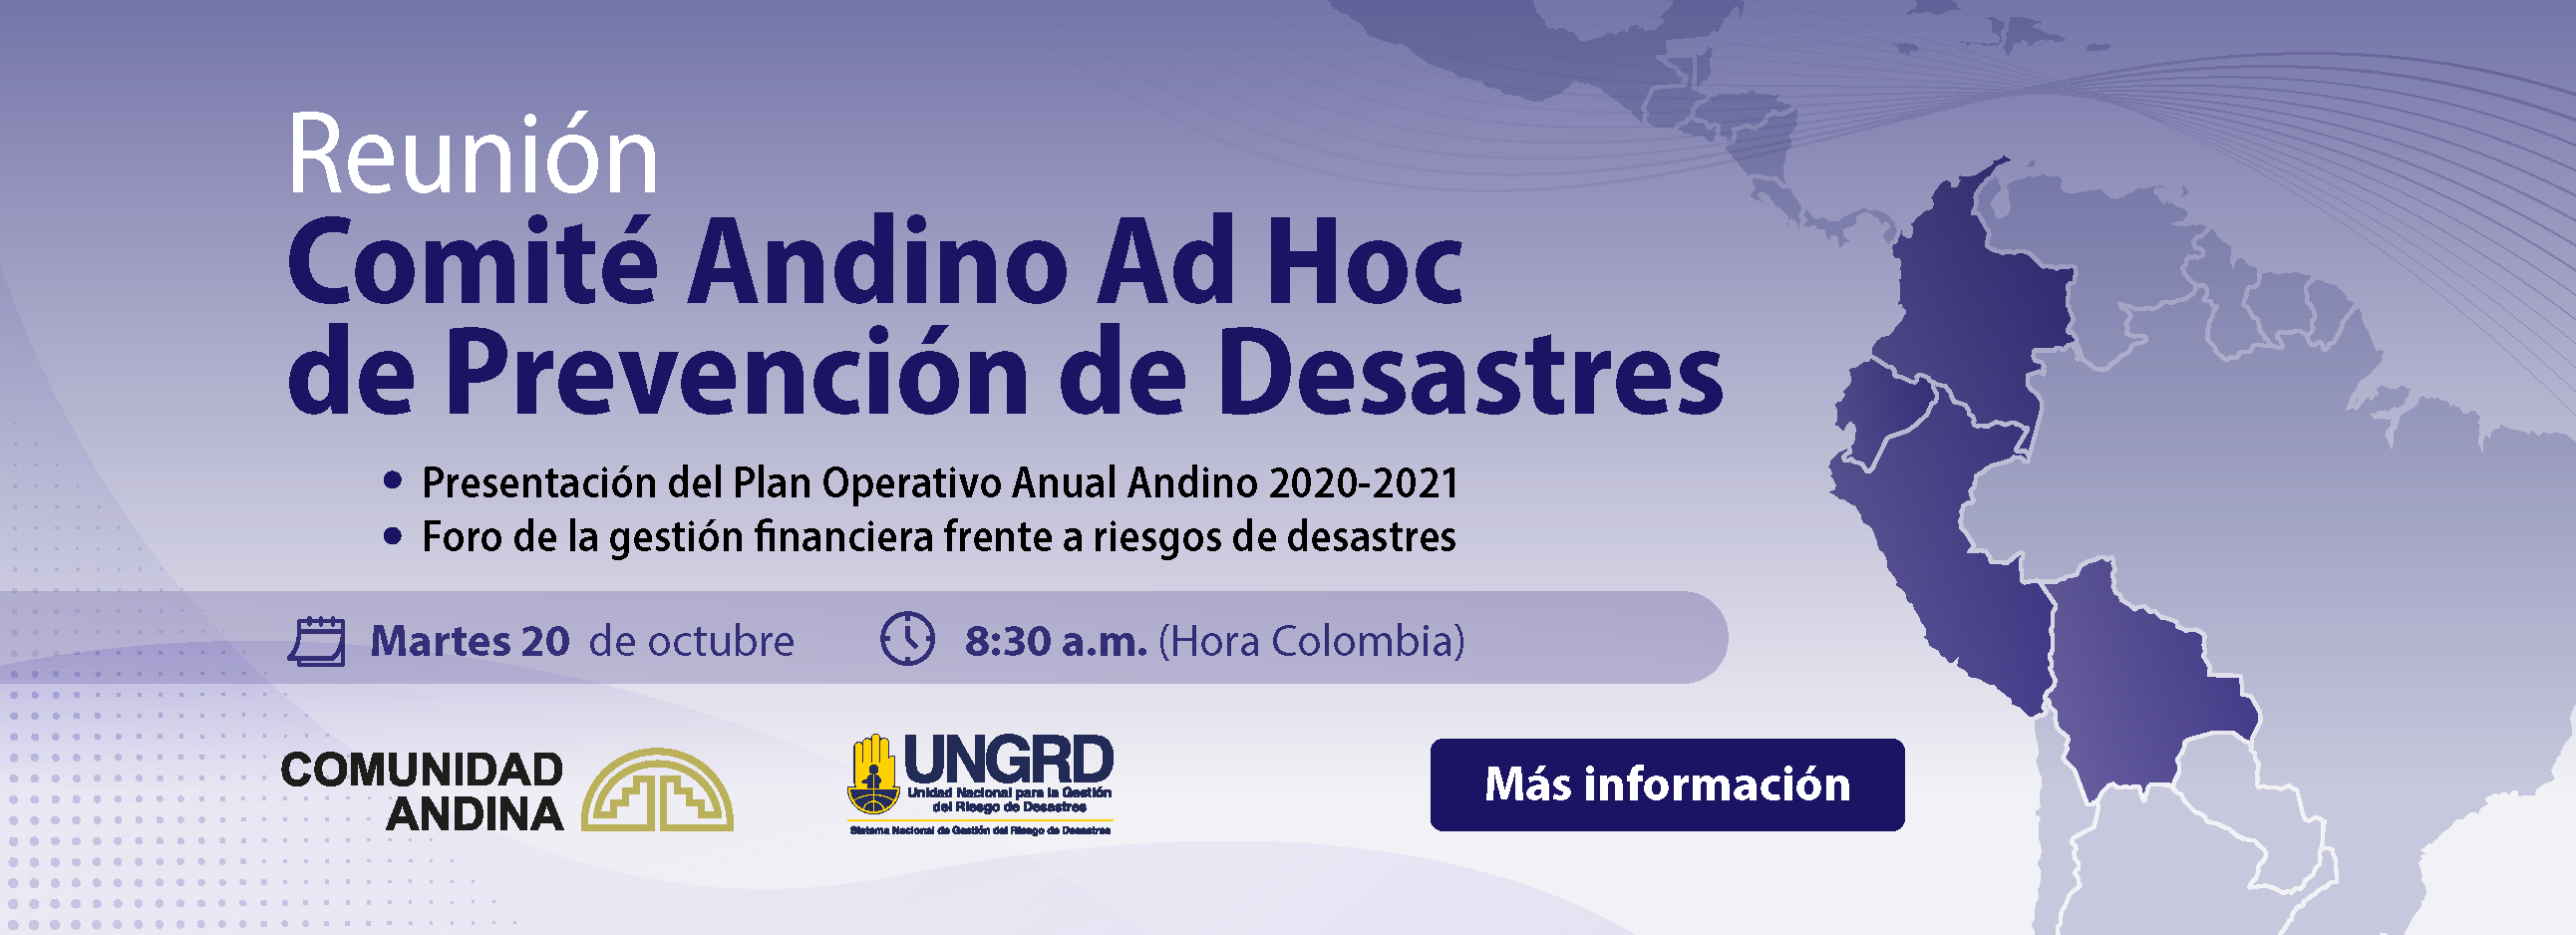 Comité Andino Ad Hoc de Prevención de Desastres 2020.